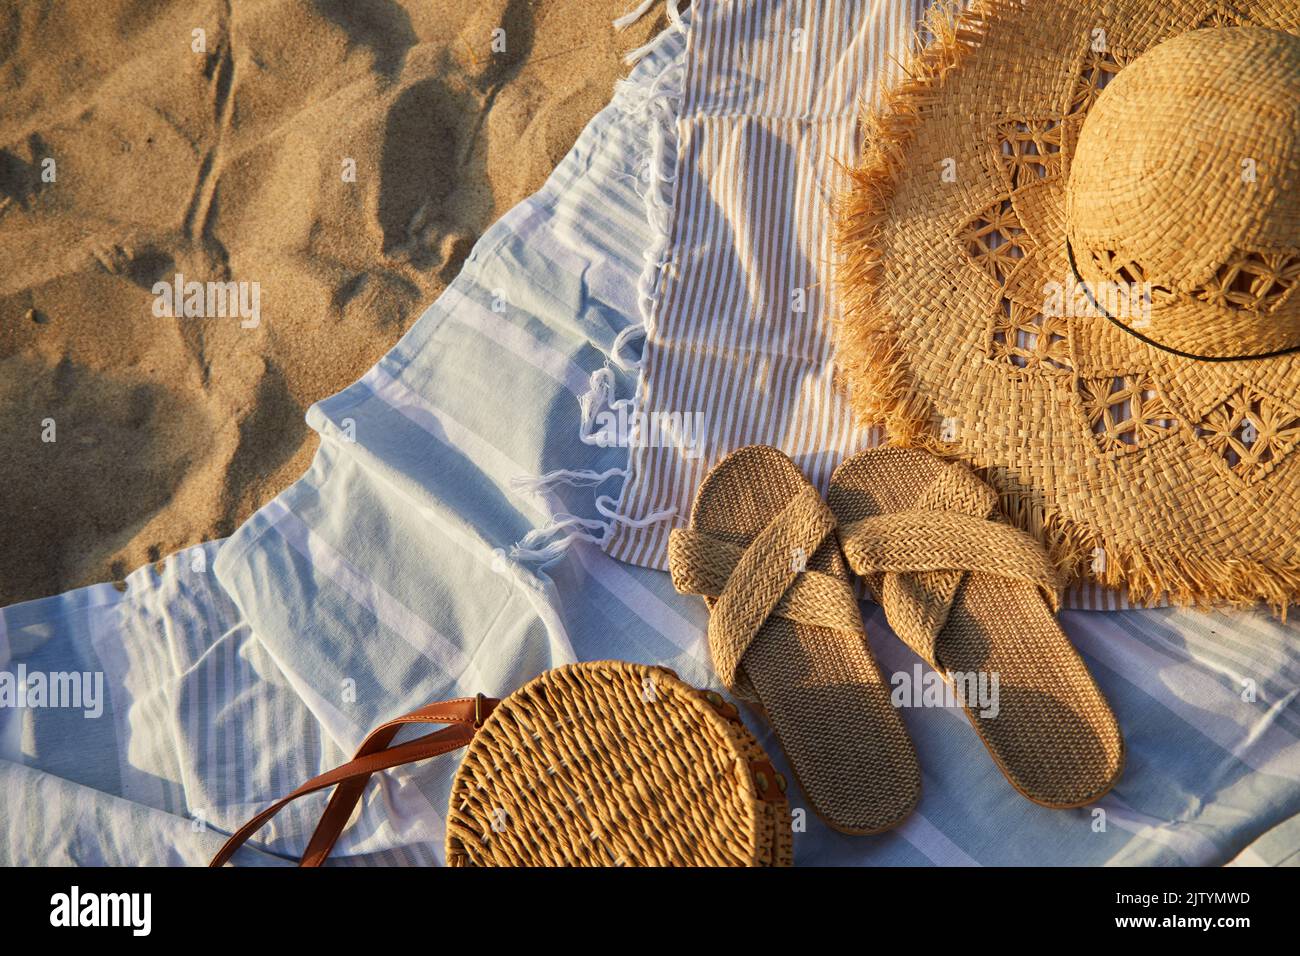 Vue de dessus des accessoires de plage. Chapeau de paille, sac, tongs sur sable à la plage. Banque D'Images